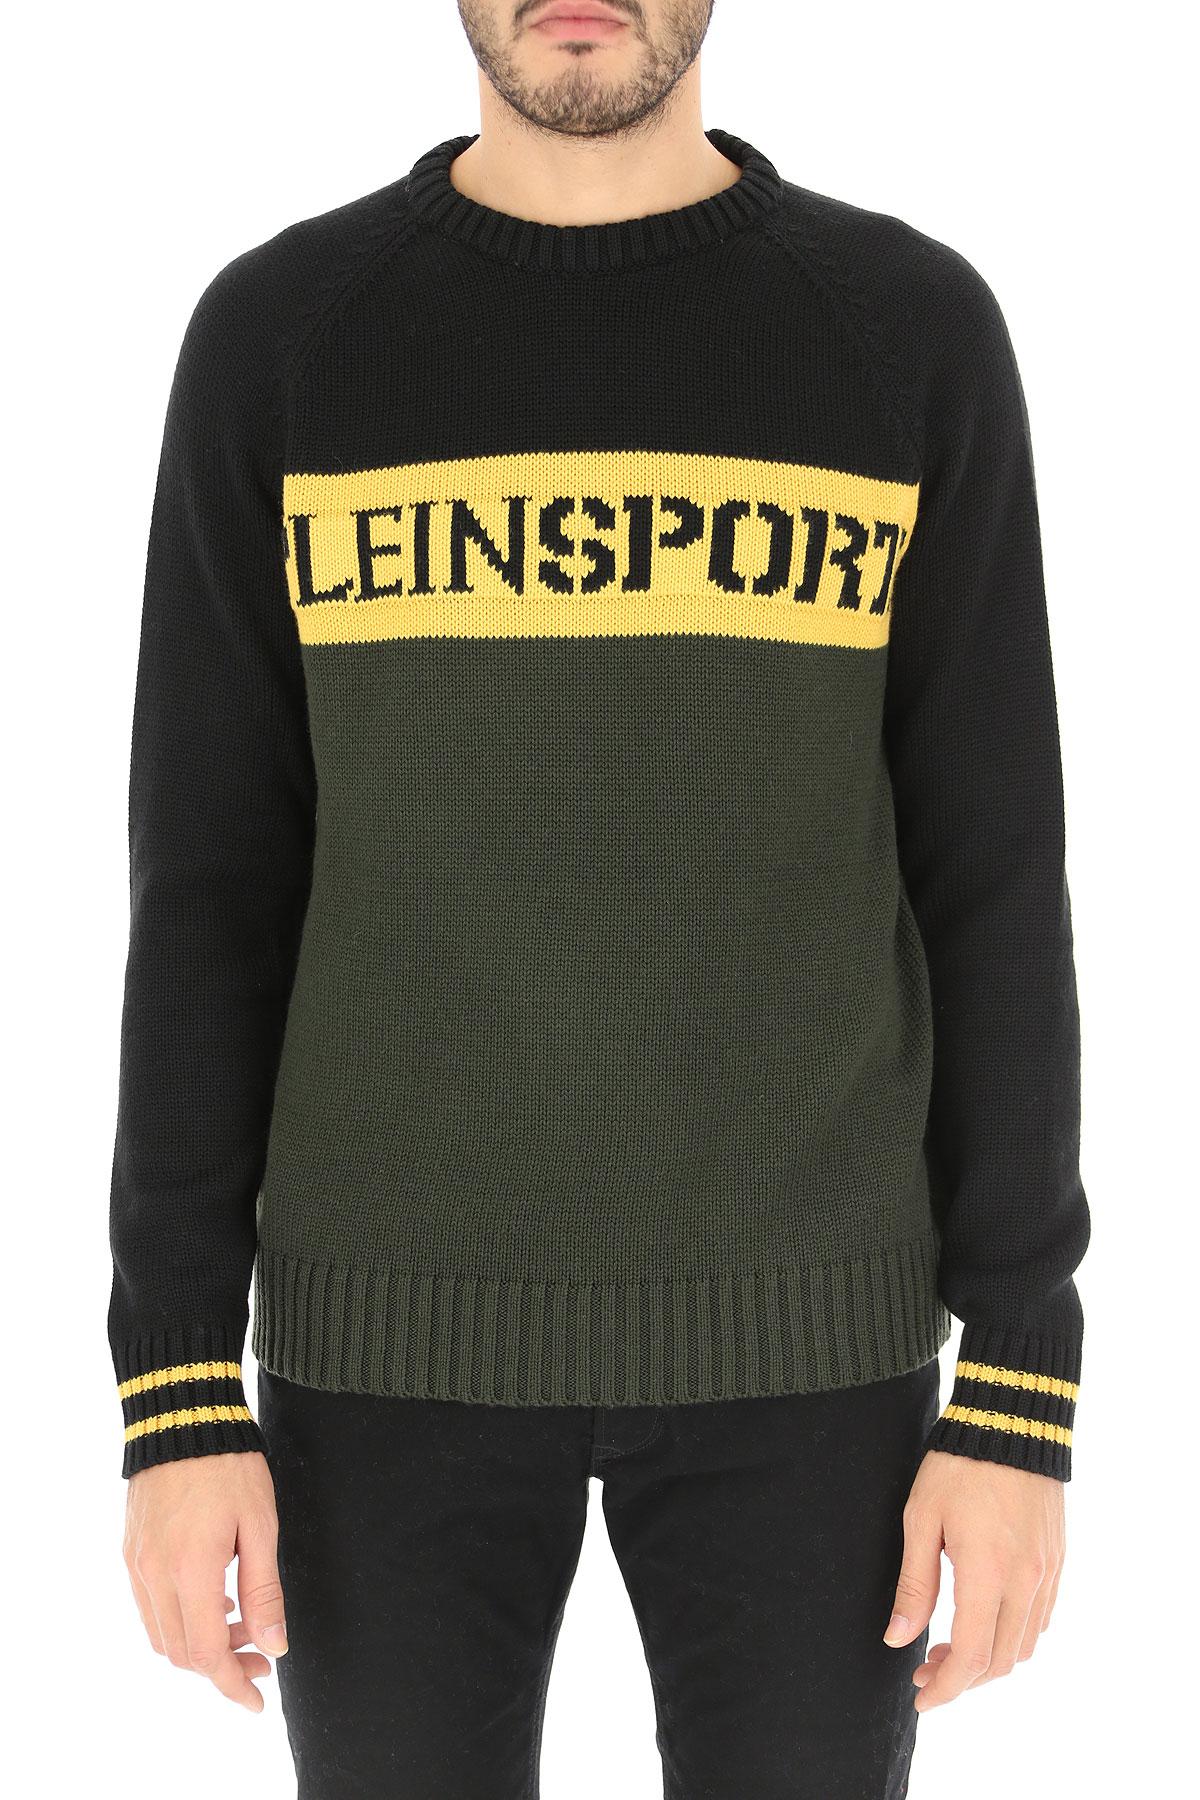 Philipp Plein Sweater For Men Jumper in Black for Men - Lyst